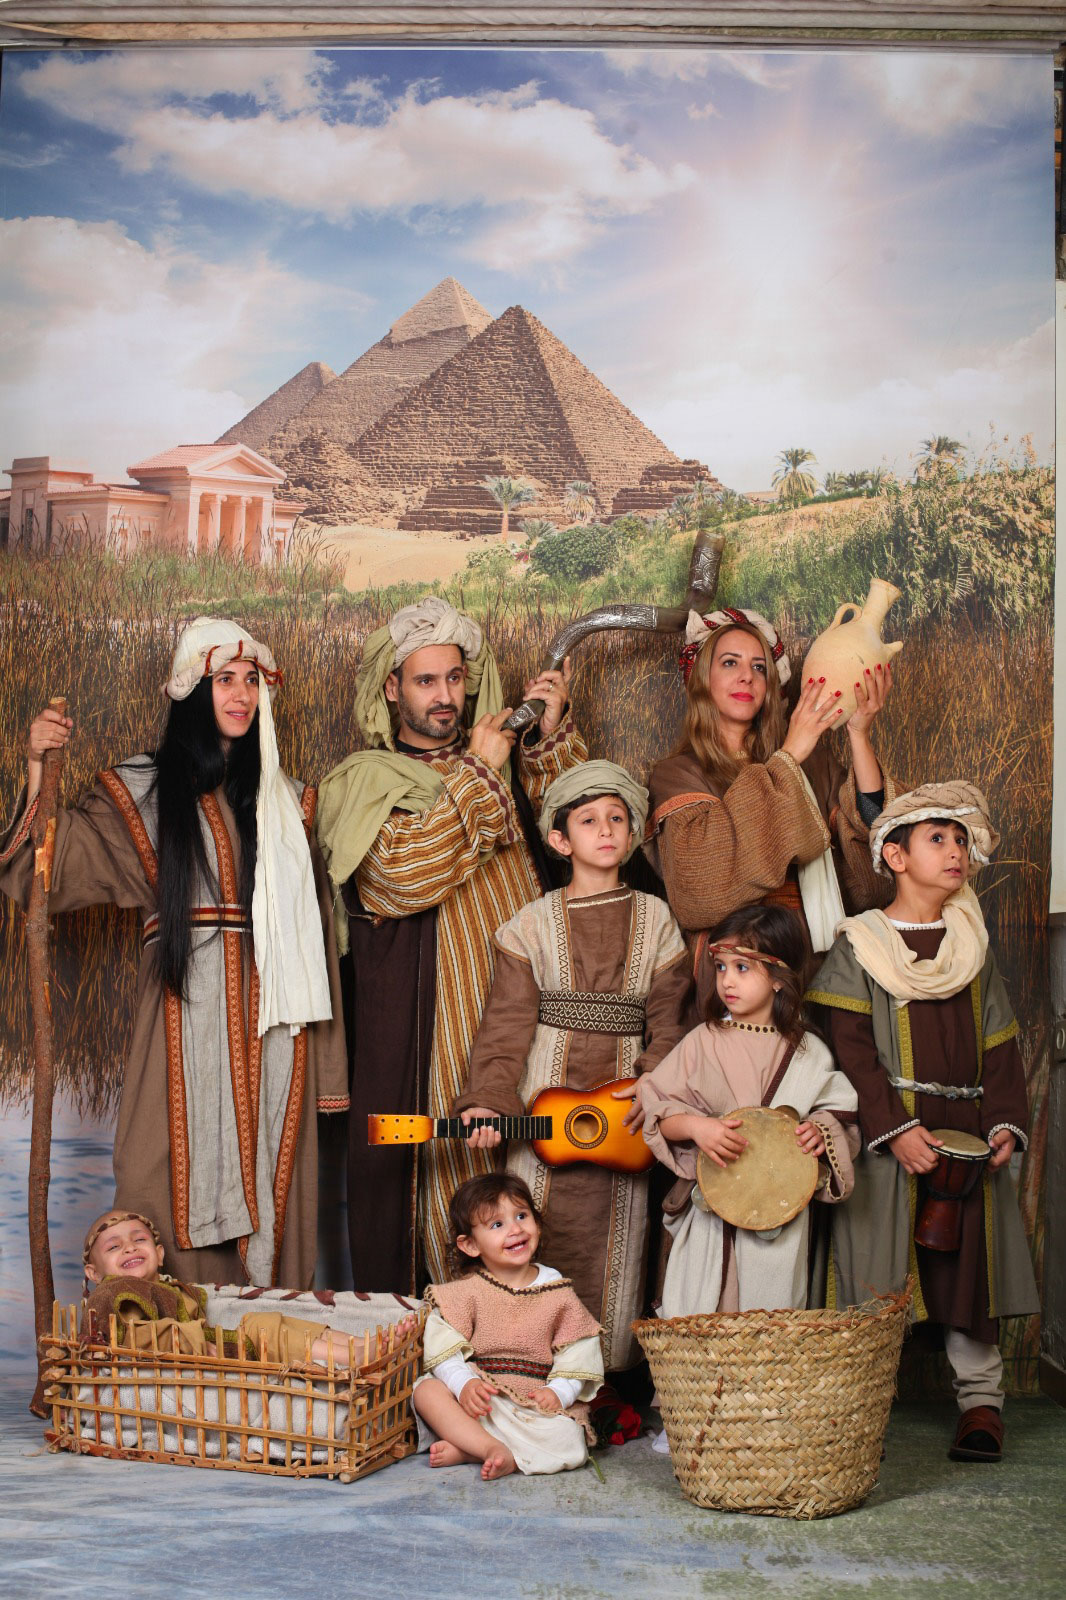 משפחת פינטו מבאר שבע יצאה ליום כיף וגיבוש בירושלים